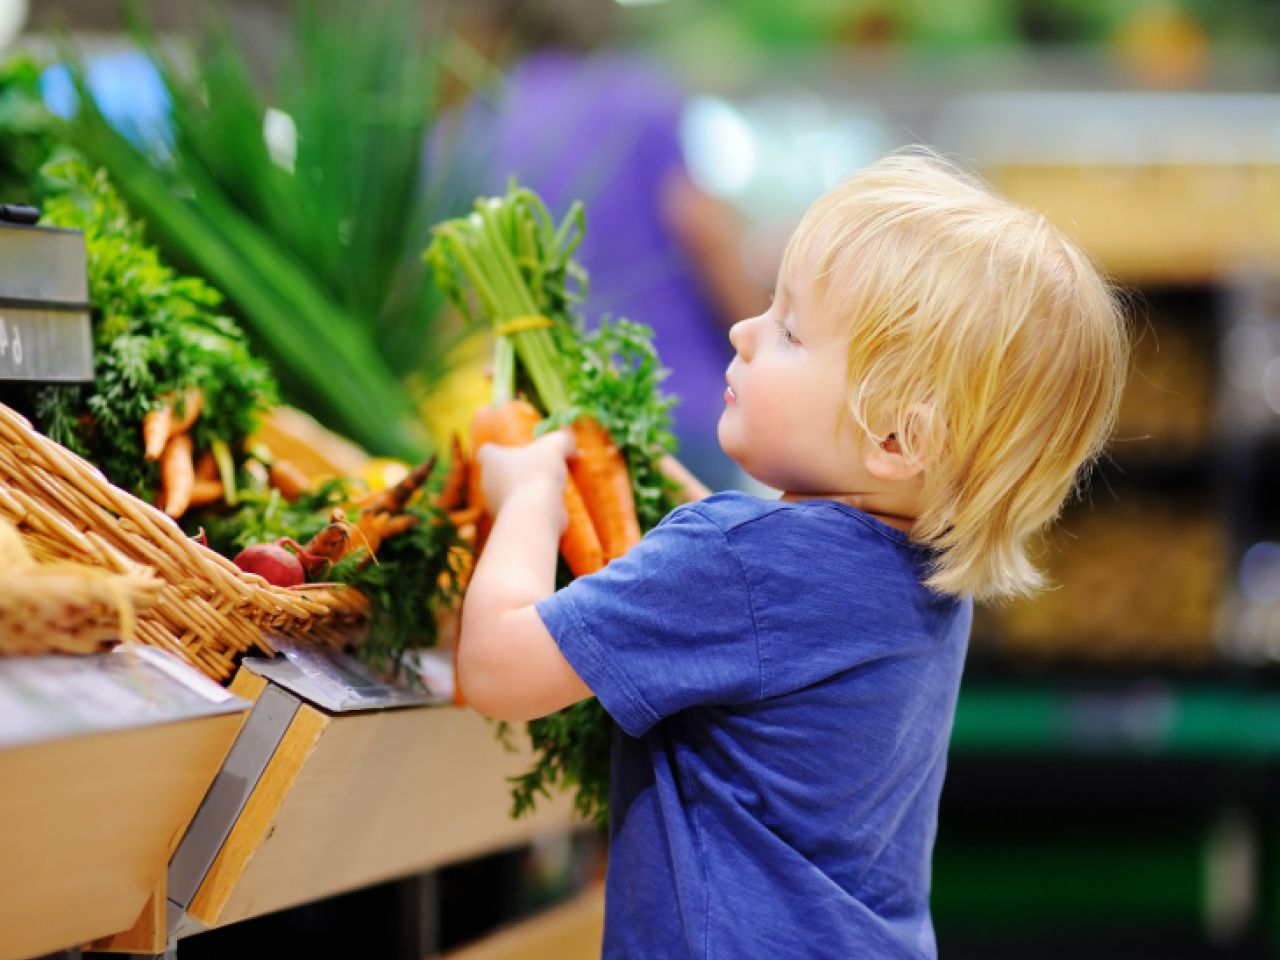 Boy grabbing carrots at the supermarket